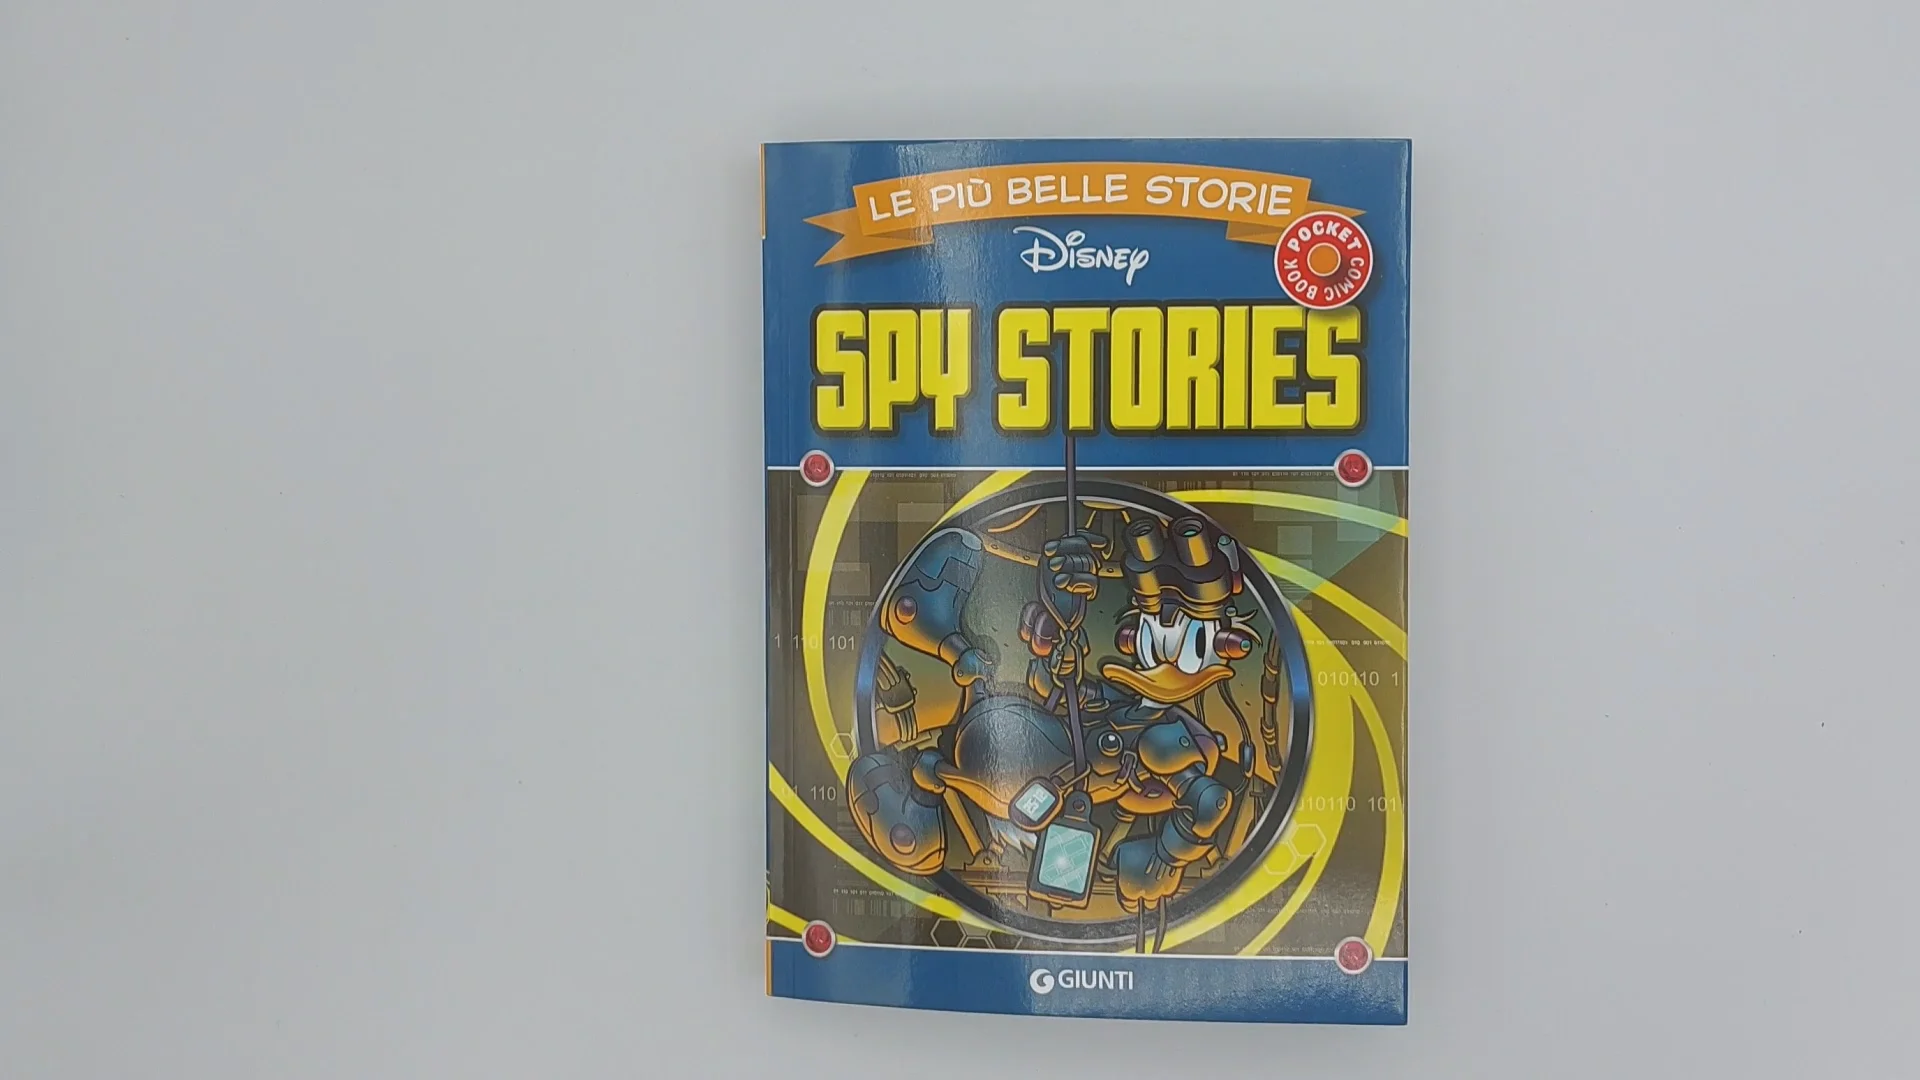 Spy Stories - Le più belle storie Disney Pocket on Vimeo